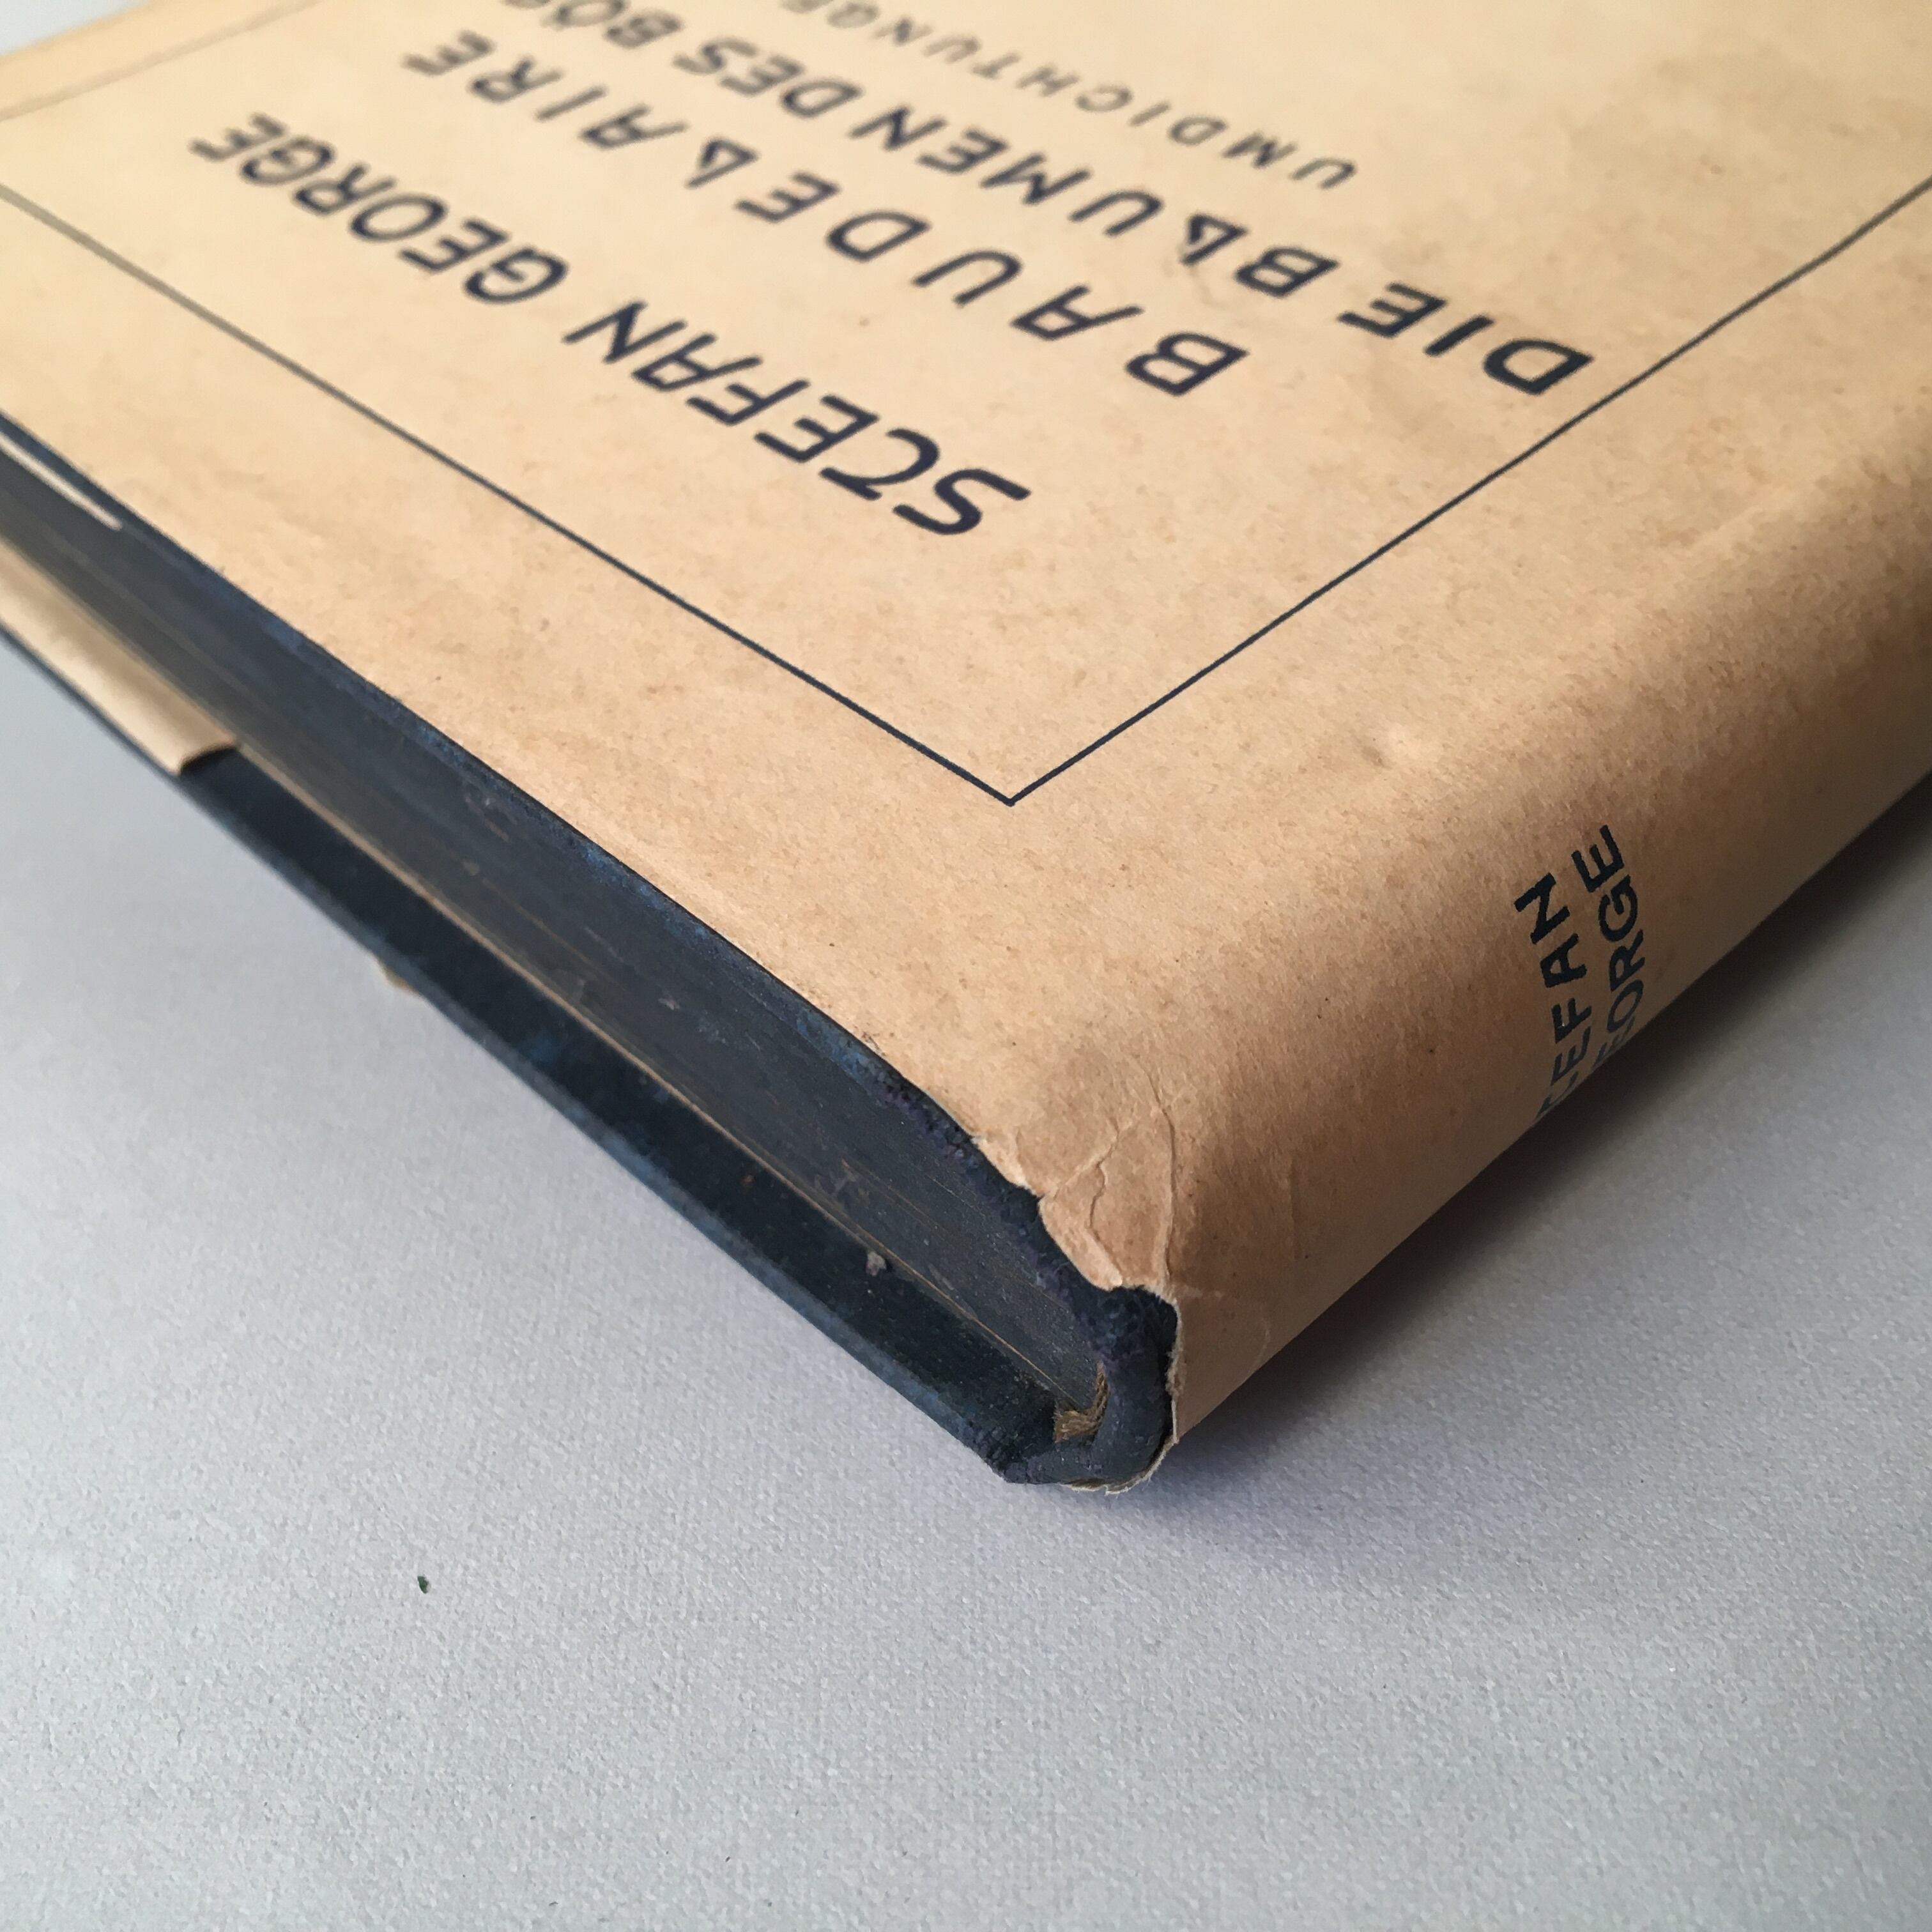 ゲオルゲ独訳 ボードレール悪の華 1930年全集版カバー付き（ドイツ古書